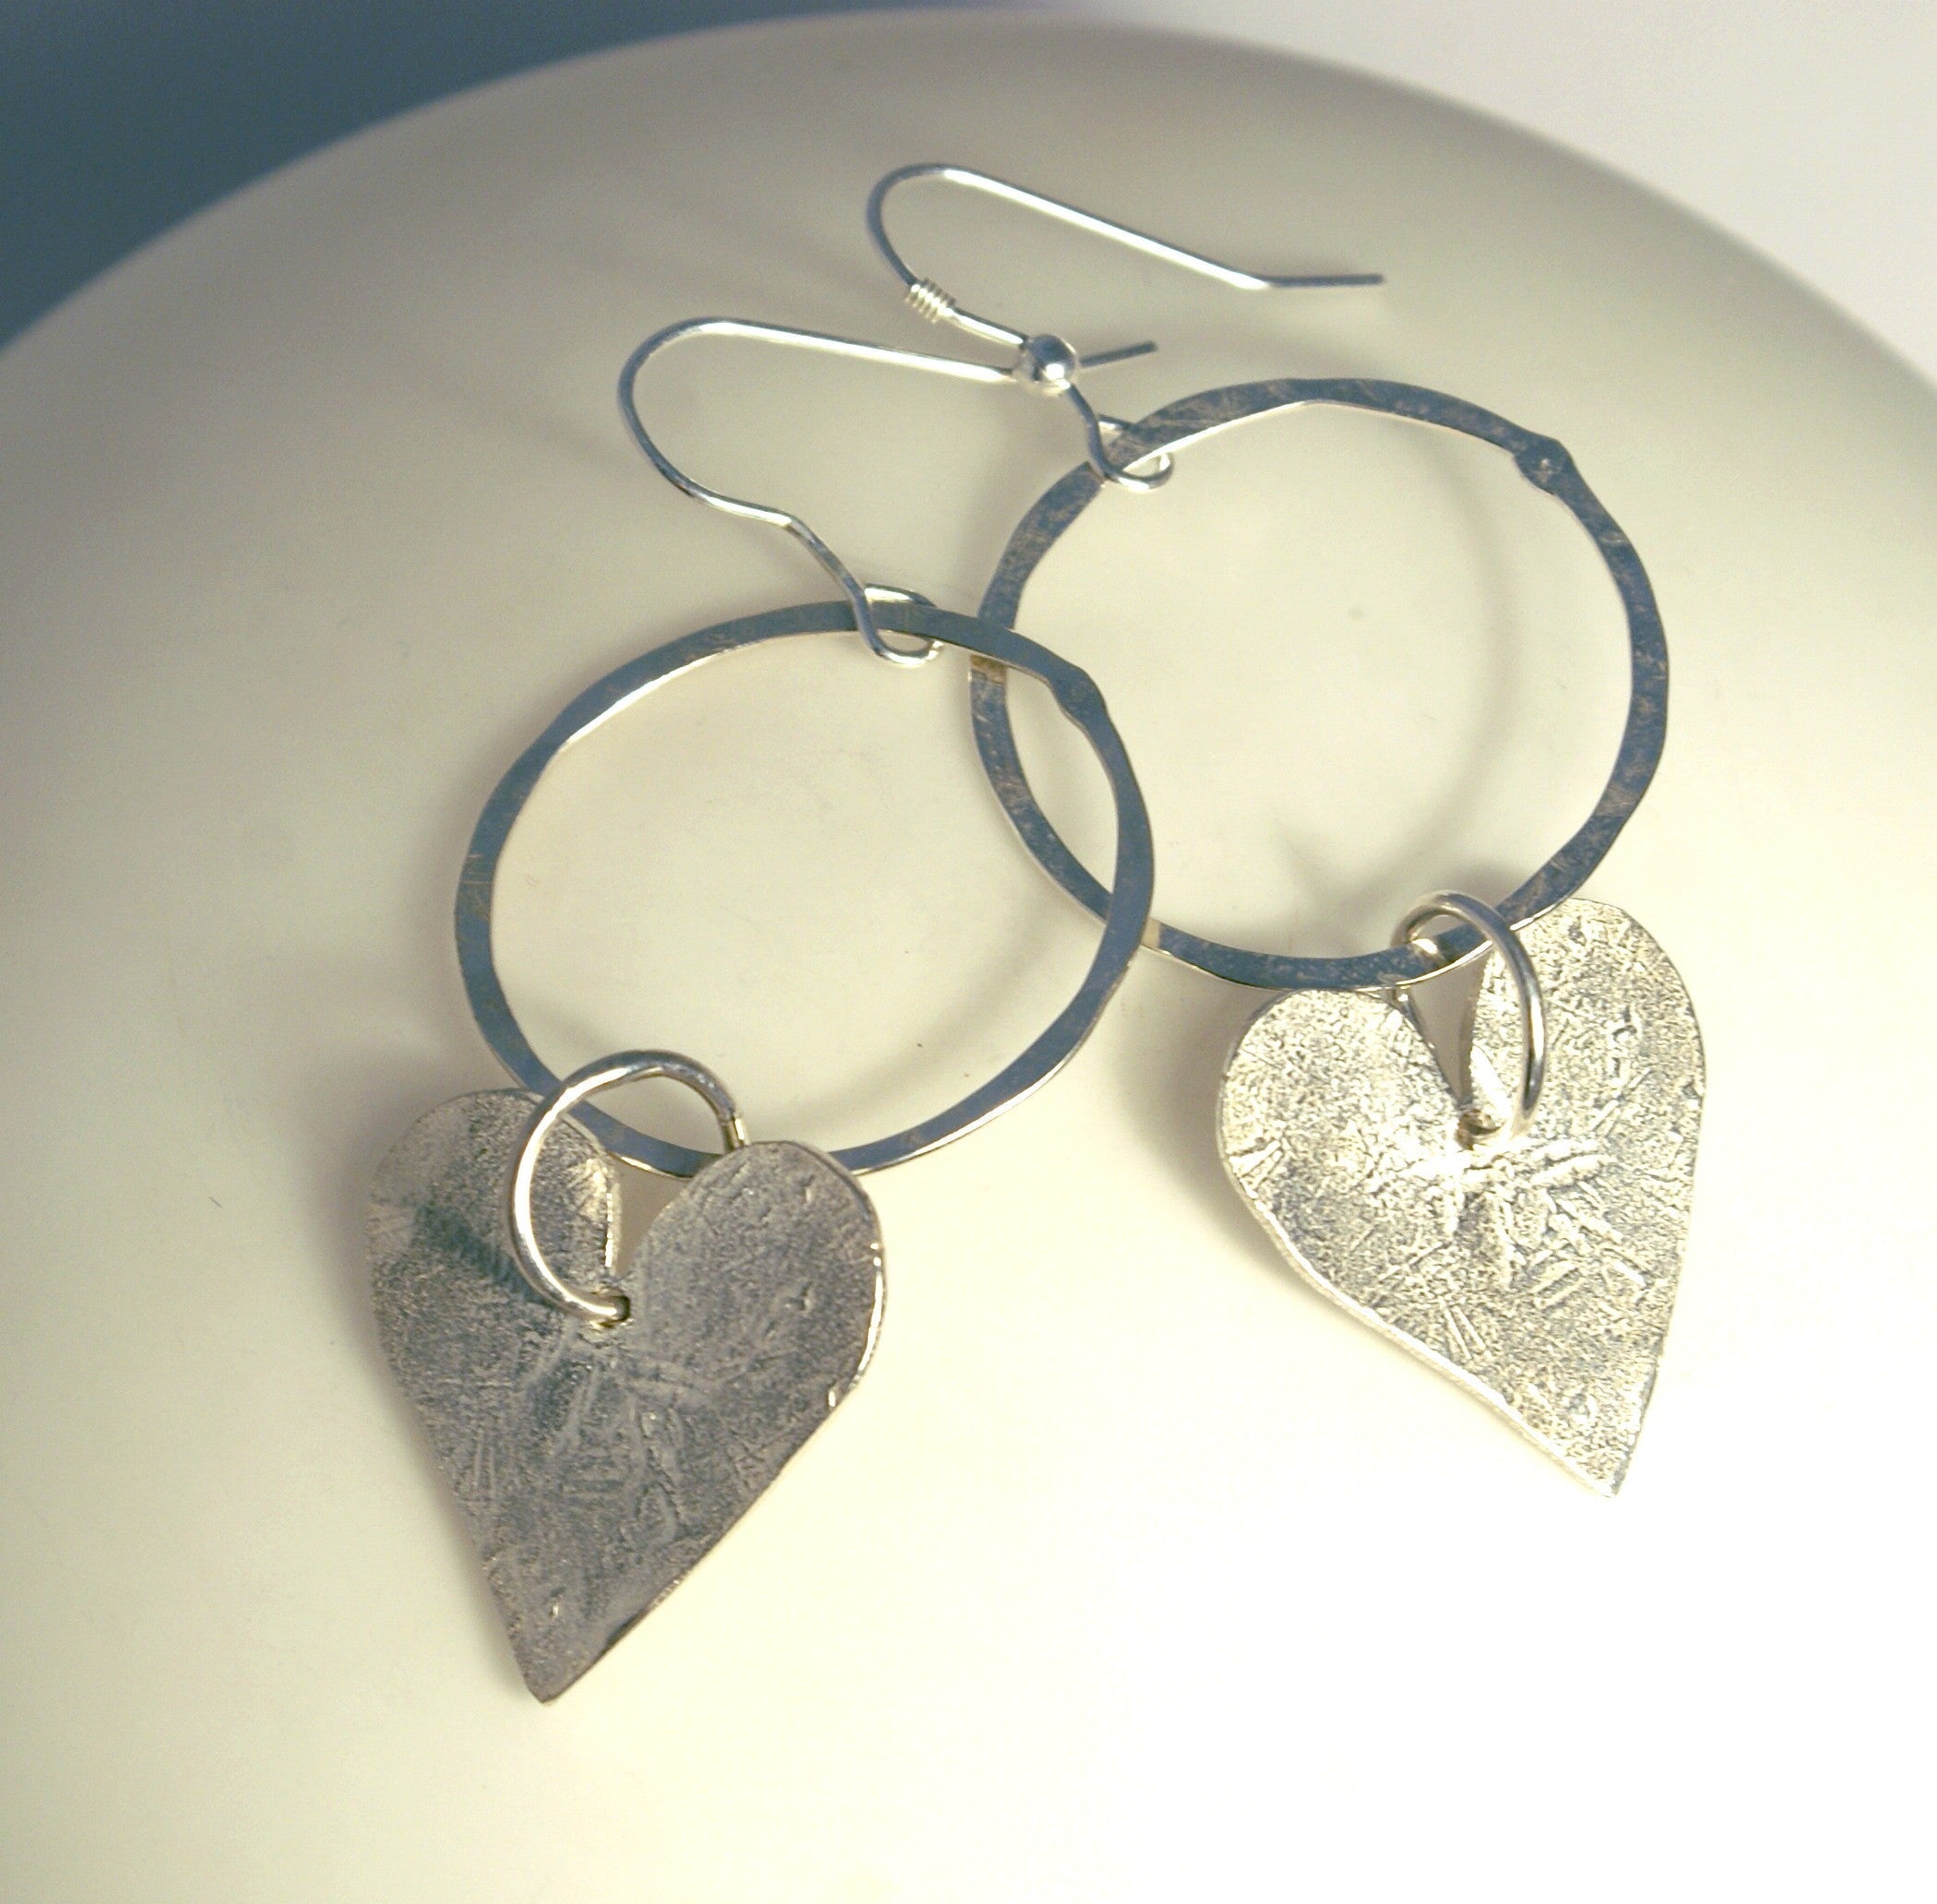 Heart Hoop Earrings - The Nancy Smillie Shop - Art, Jewellery & Designer Gifts Glasgow